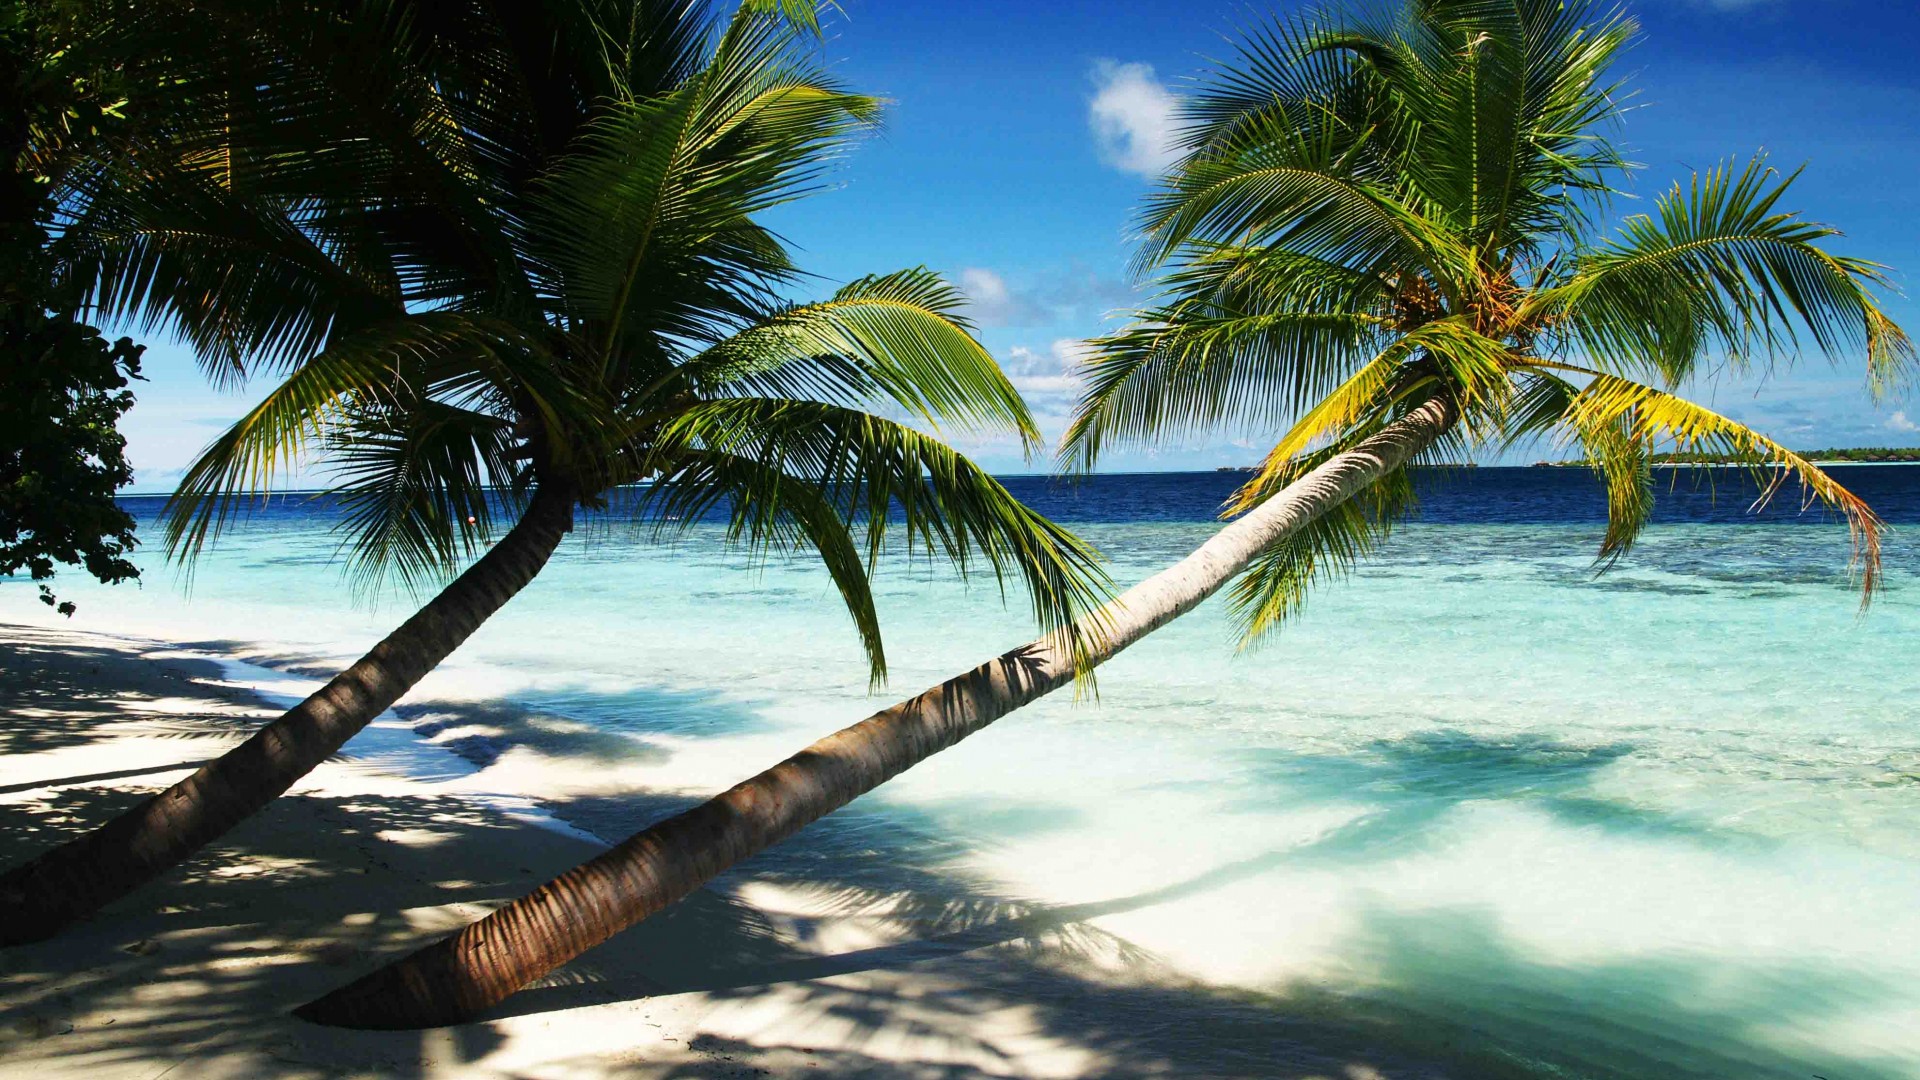 Мальдивские острова, 4k, 5k, пальмы, рай, отпуск, отдых, путешествие, бронирование, остров, океан, бунгало, пляж, небо, Maldives, 4k, 5k wallpaper, holidays, palms, paradise, vacation, travel, hotel, island, ocean, bungalow, beach, sky (horizontal)